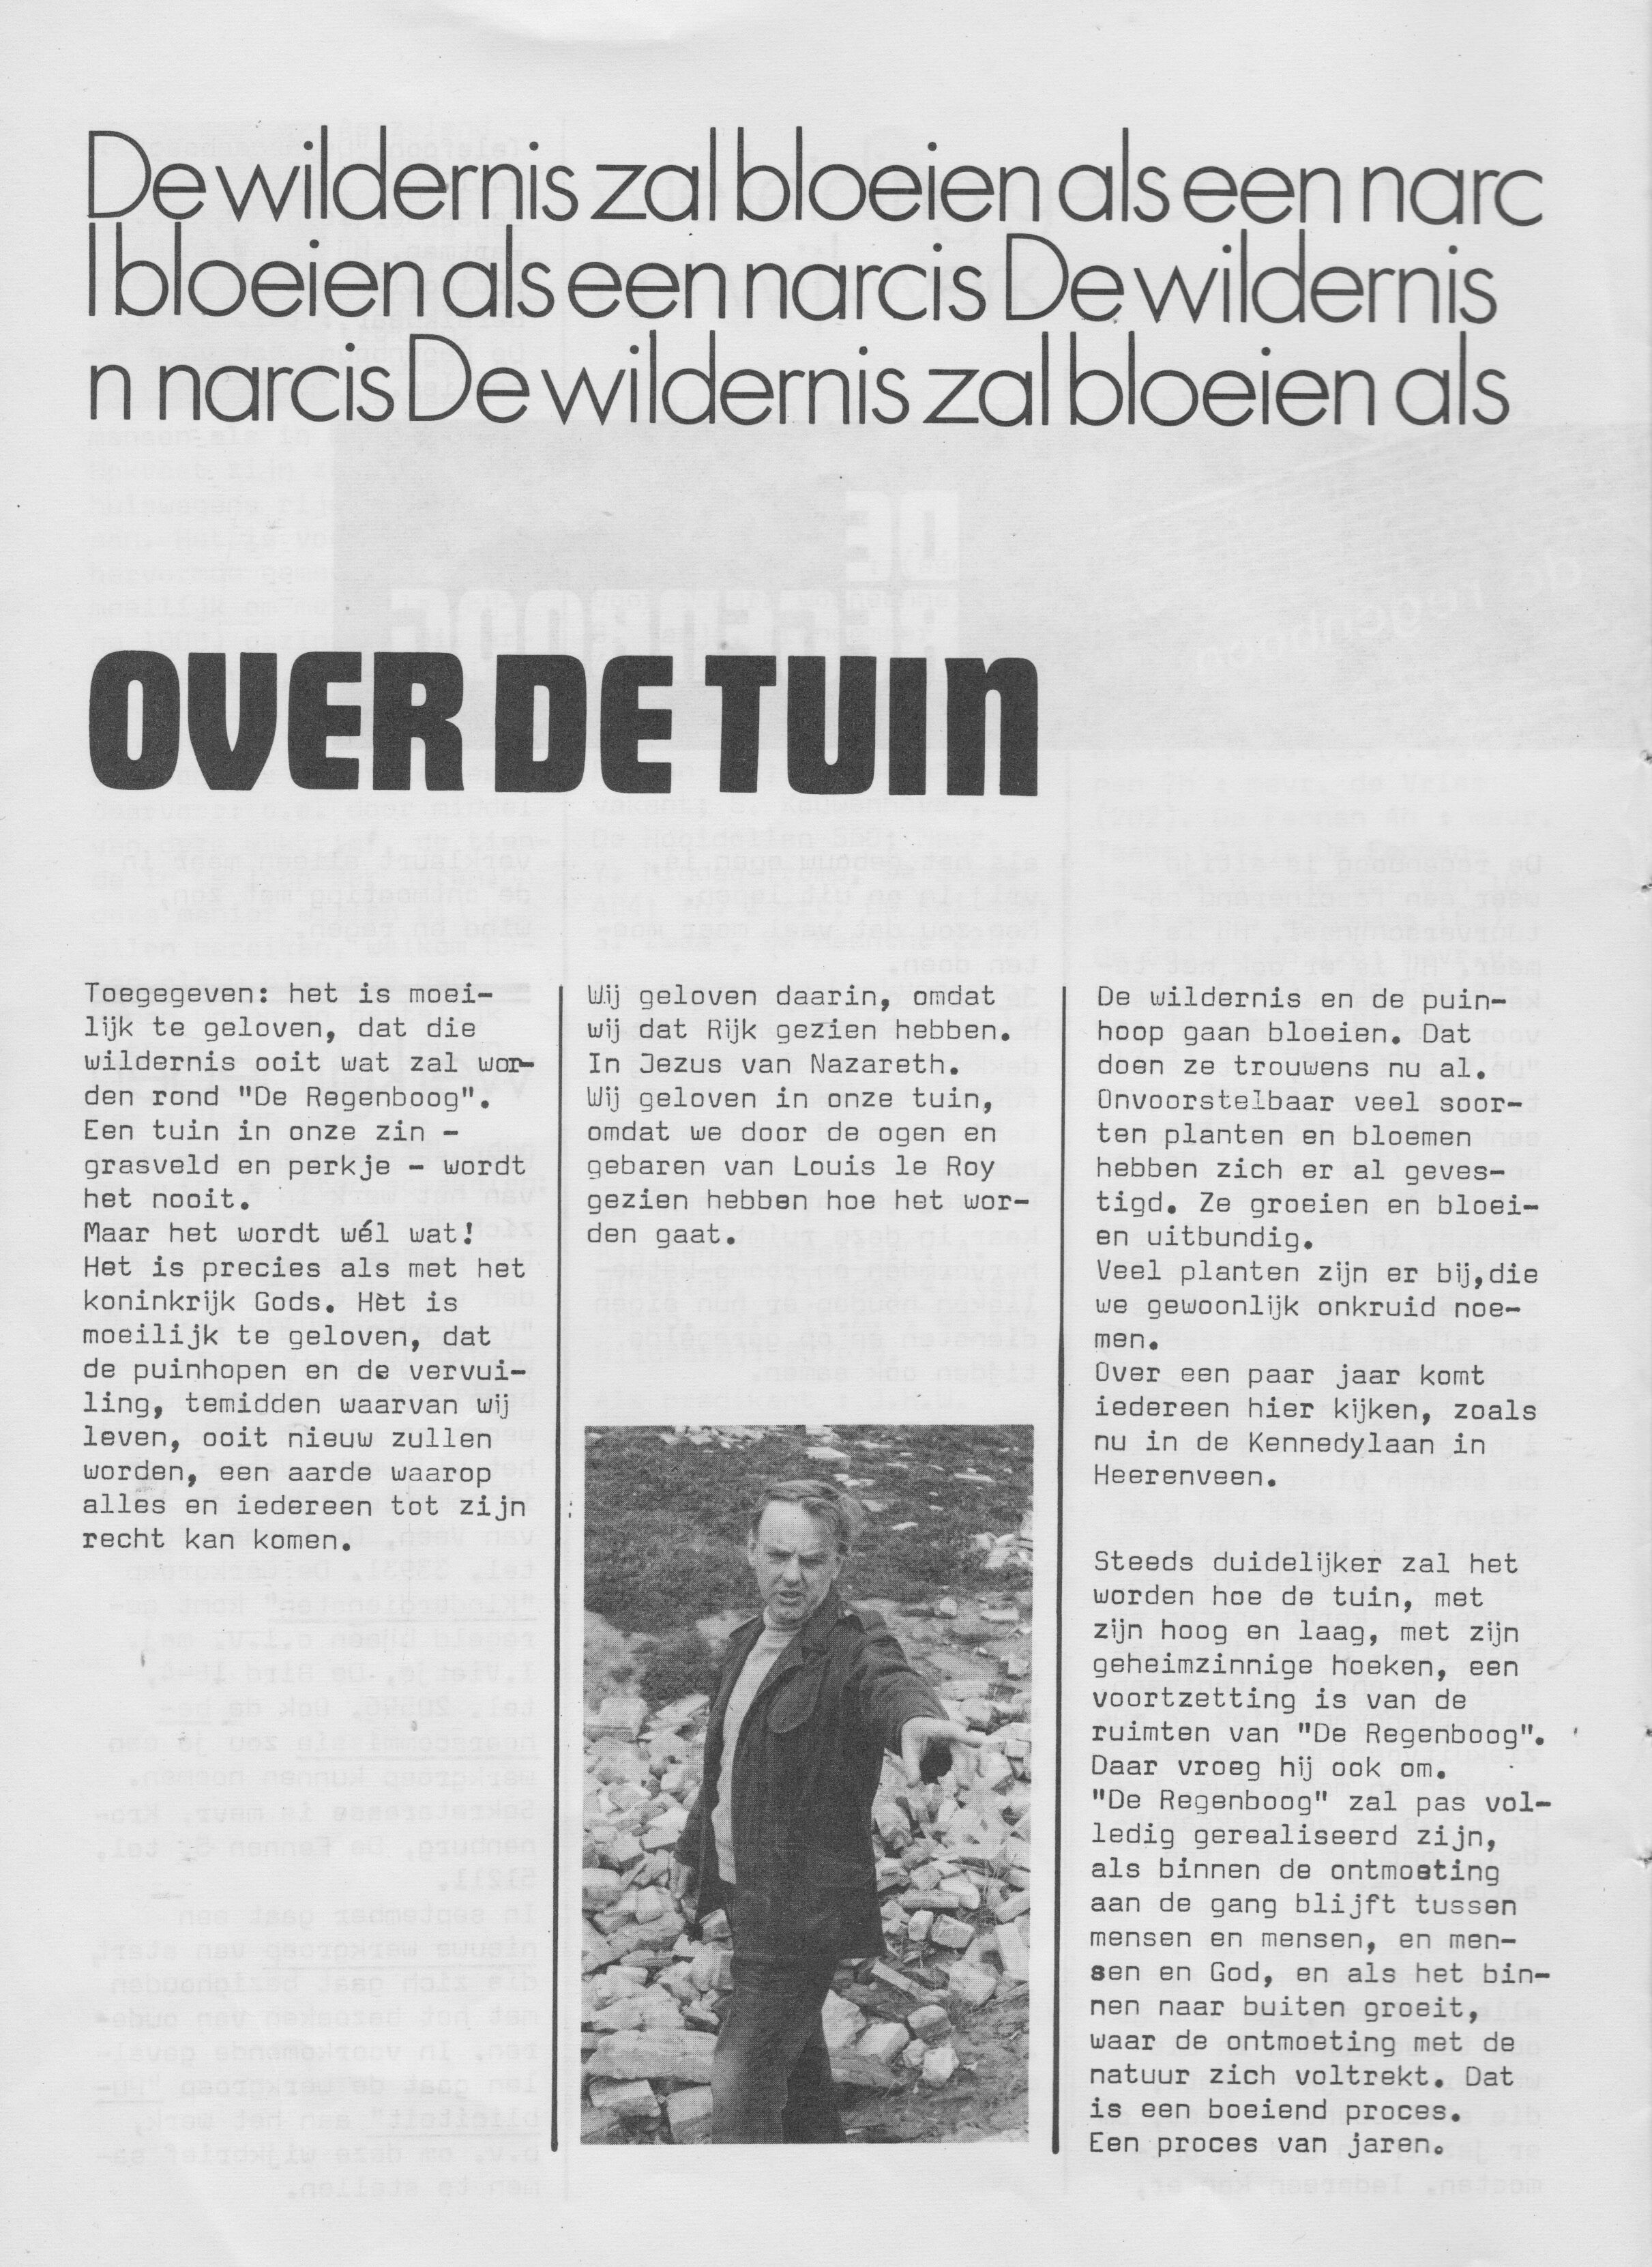 1973_Over_de_tuin.jpeg